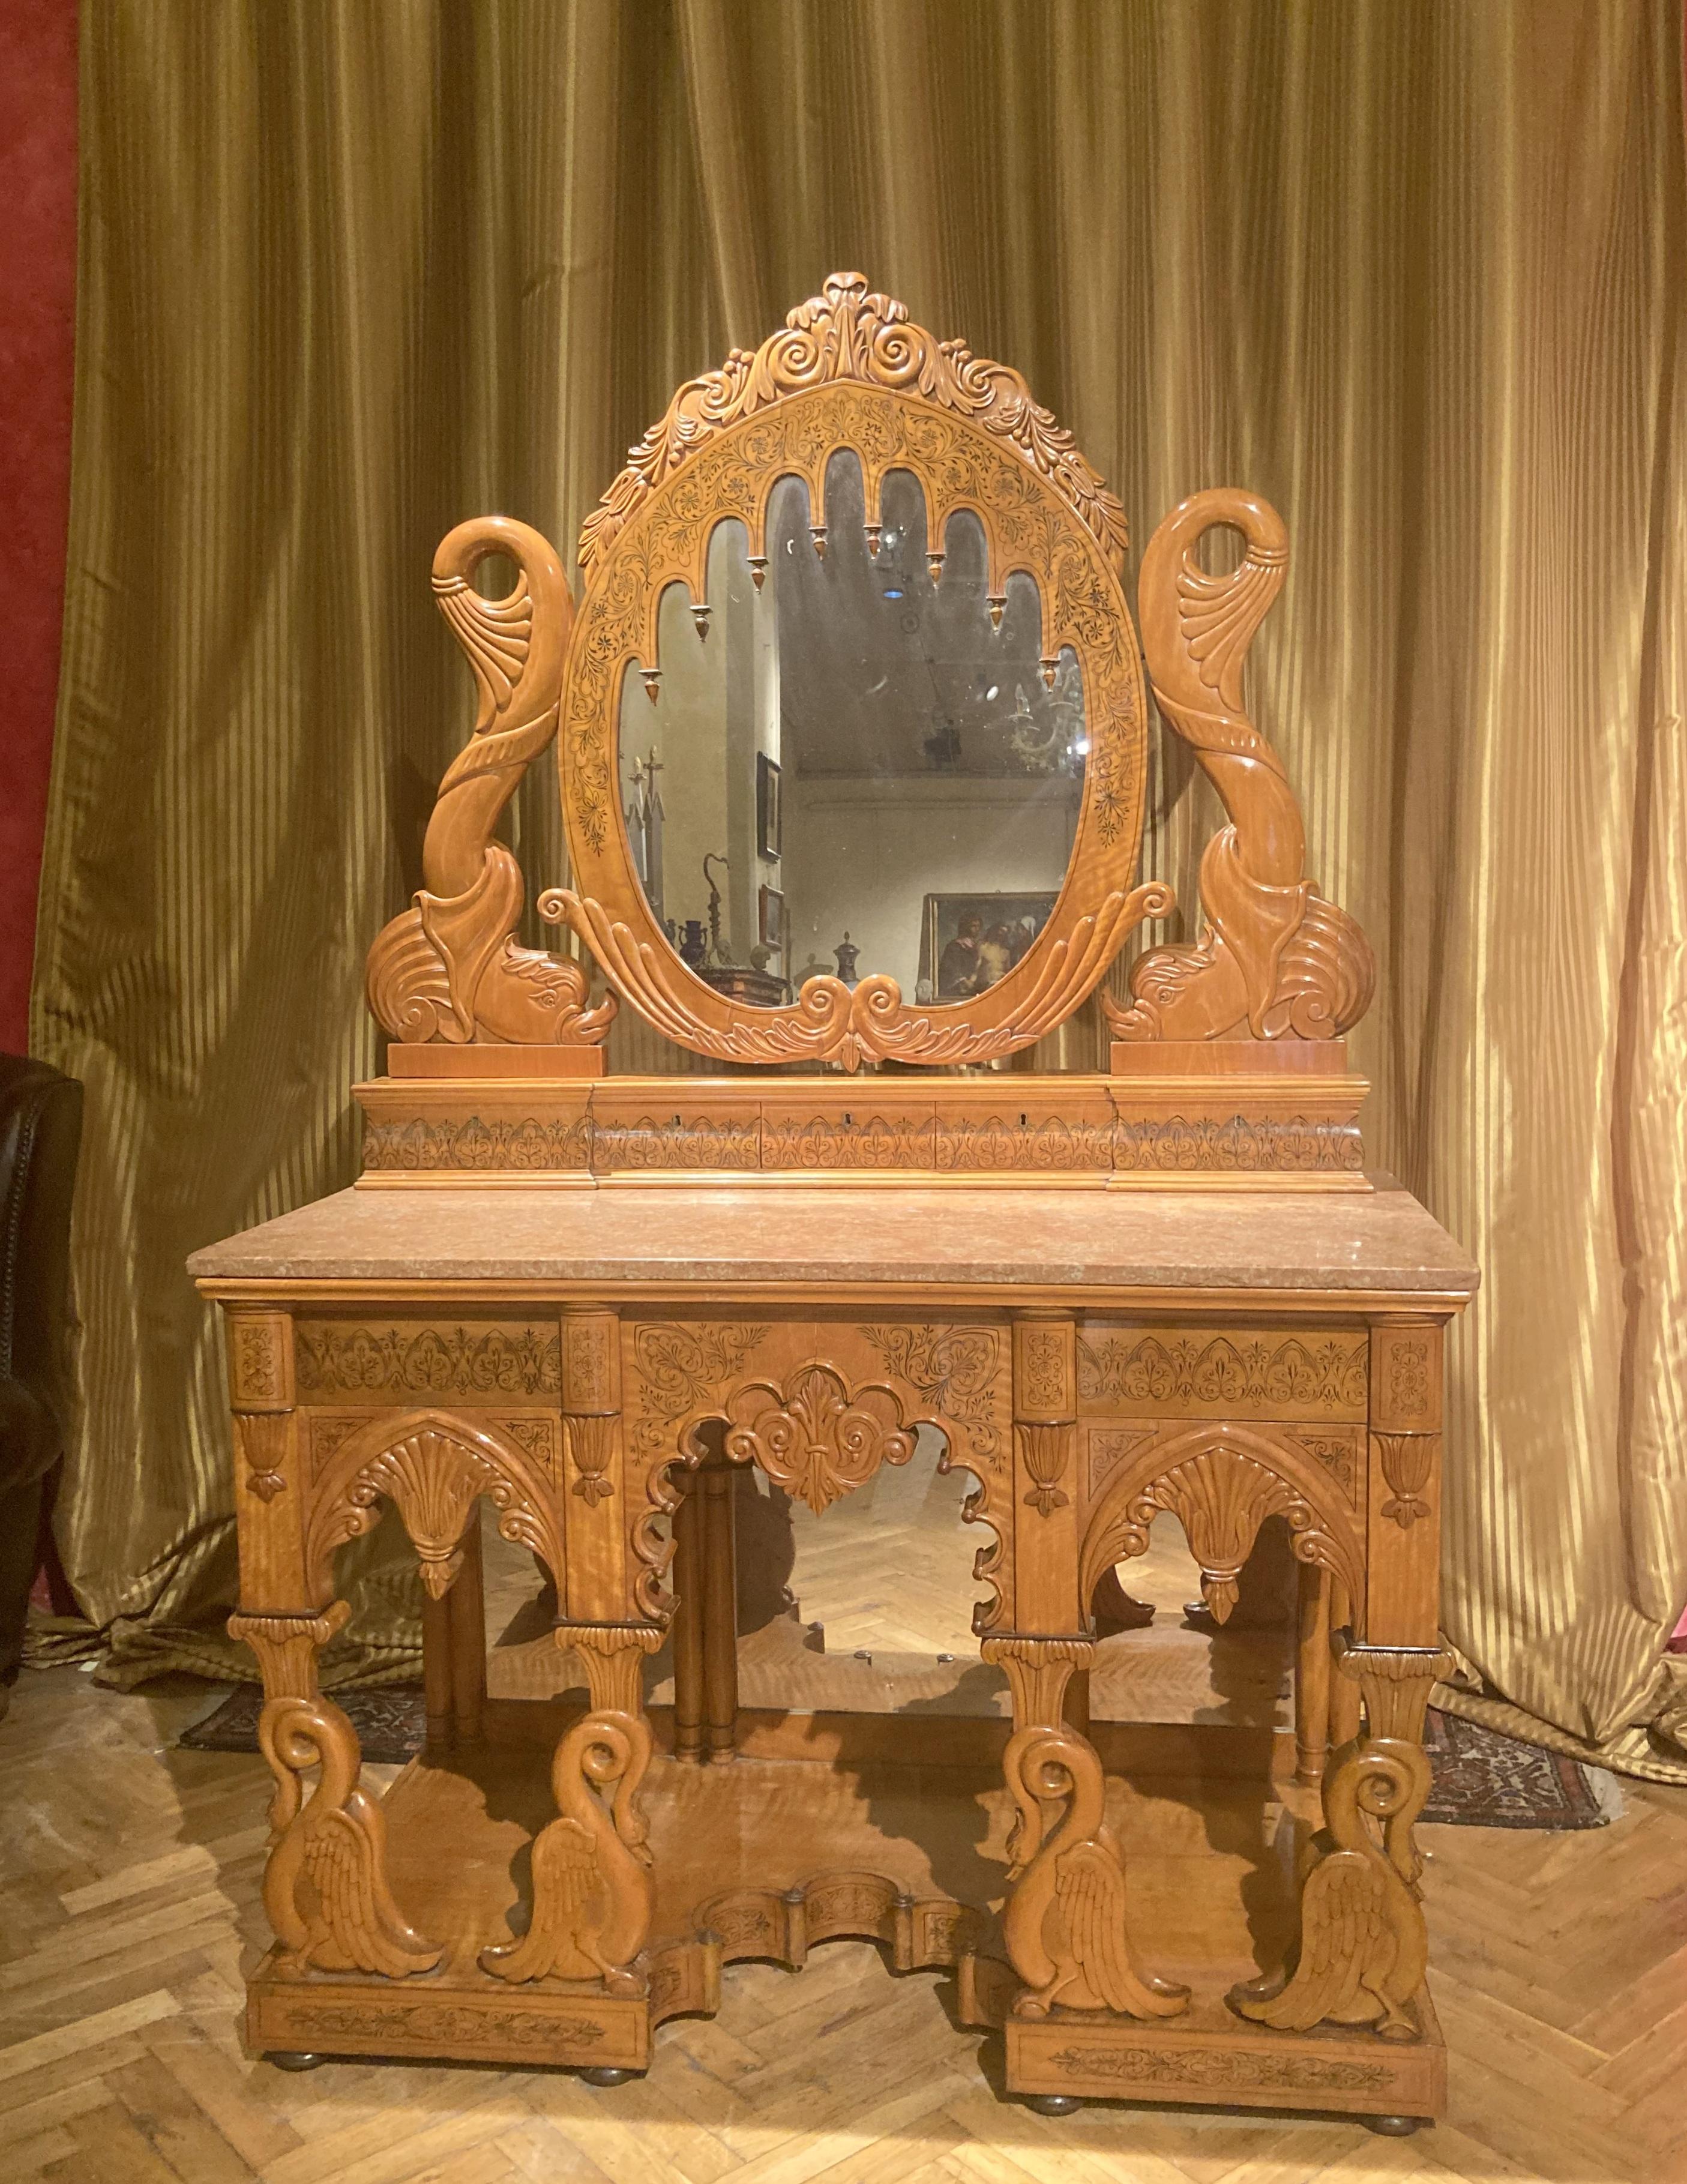 Cette console ou coiffeuse d'époque Régence italienne avec miroir pivotant et plateau en marbre est fabriquée en bois d'érable massif et en loupe. C'est une pièce unique qui exprime le résultat conjoint de l'ébénisterie italienne haut de gamme et de